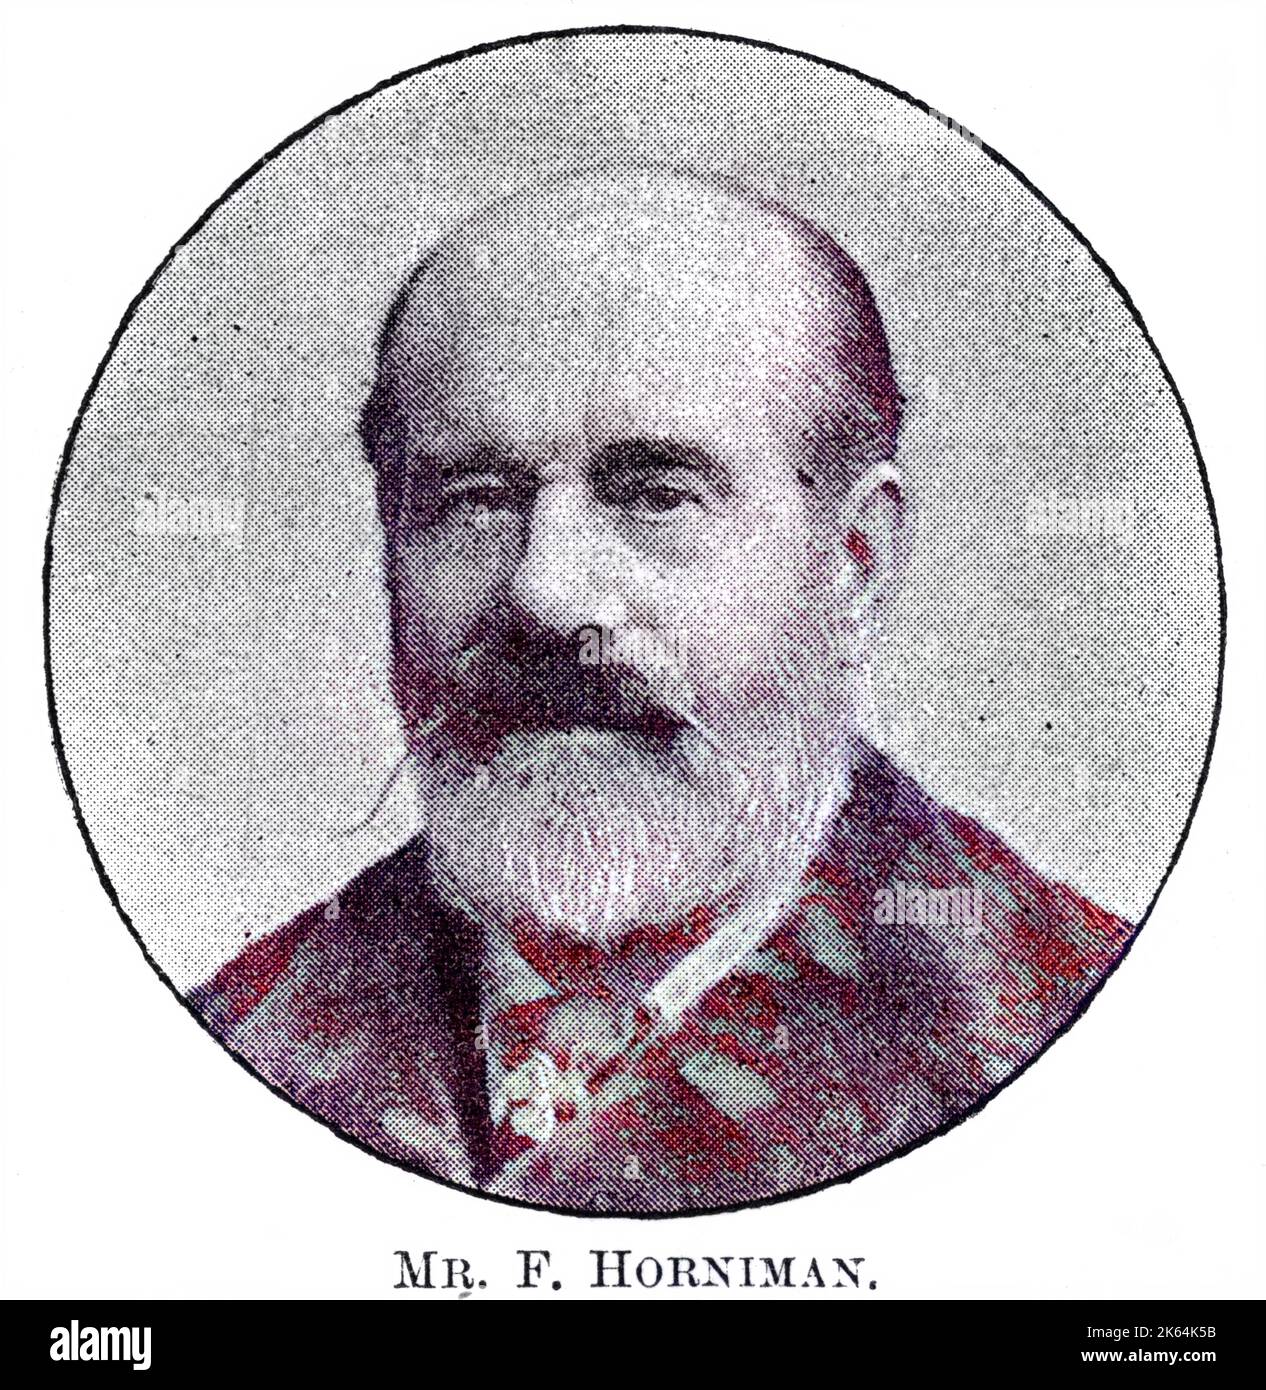 FREDERICK HORNIMAN marchand de thé de Londres, résident de Dulwich, créateur du musée Horniman sur Forest Hill, le plaisir des enfants (et de leurs parents). Date: 1835 - 1906 Banque D'Images